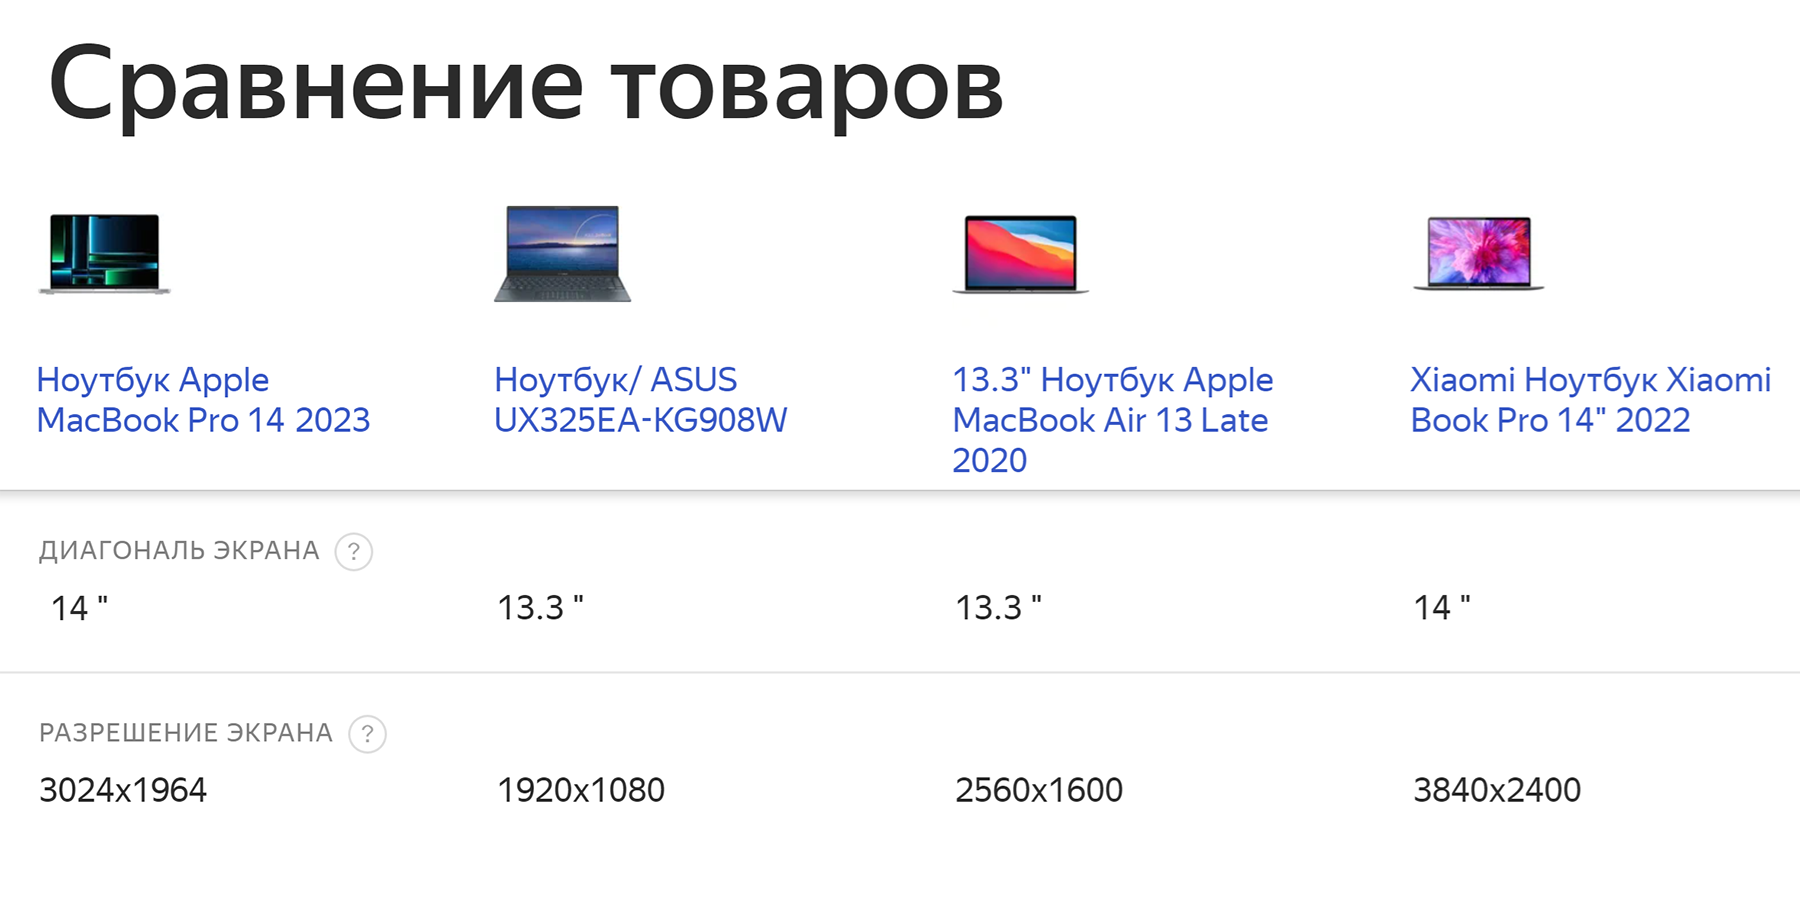 Сравнение ноутбуков Apple с моделями на Windows. У Macbook Pro 14 и Air 13 плотность пикселей схожая — 227 и 257 ppi. А у моделей на Windows разнобой — от 165 ppi до 323 ppi. Источник: market.yandex.ru